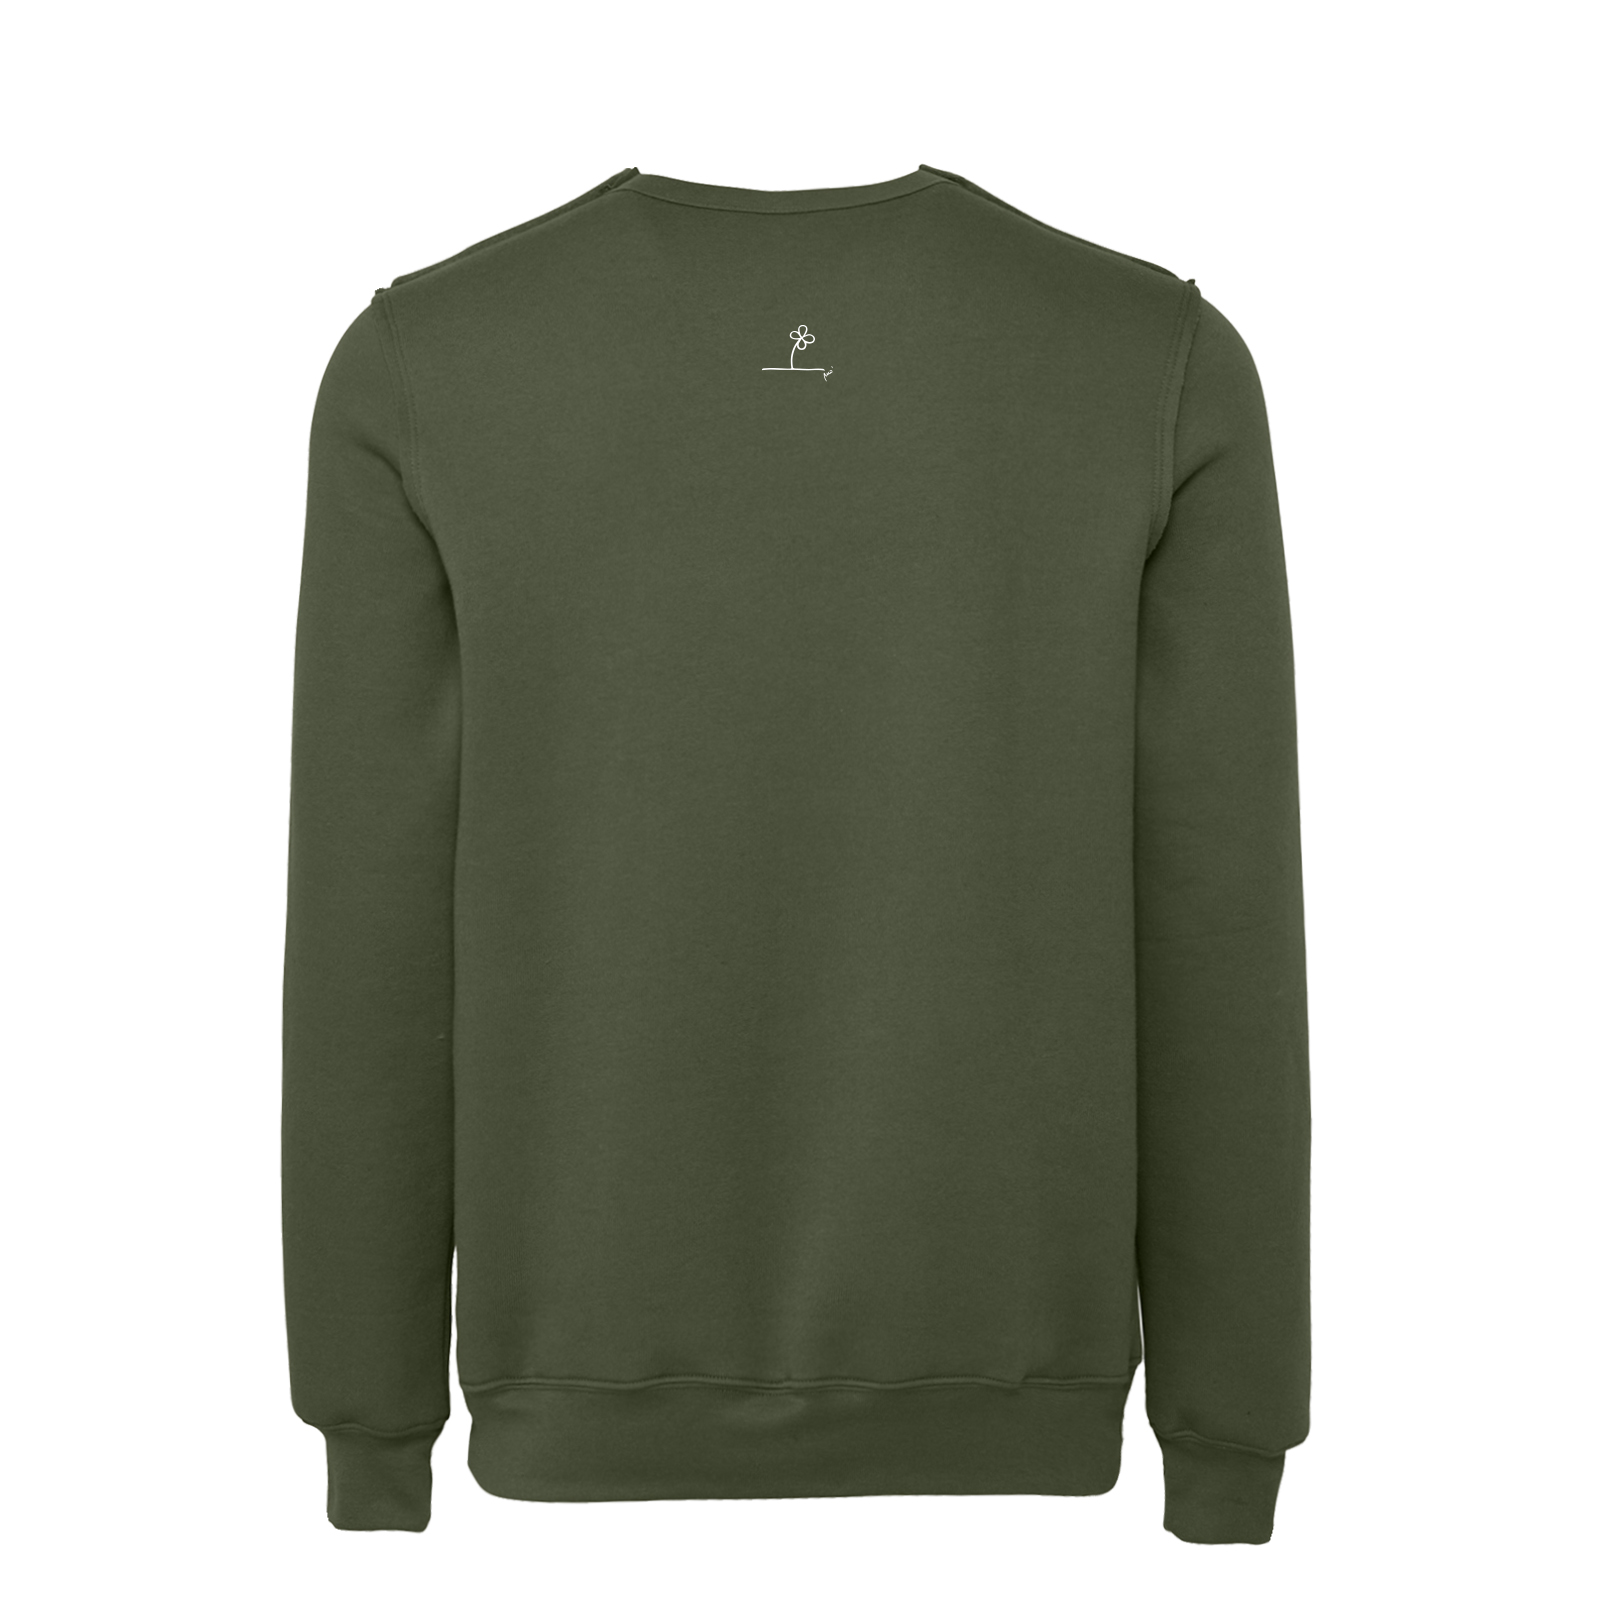 Unisex sweatshirt KANGU Monvic army green